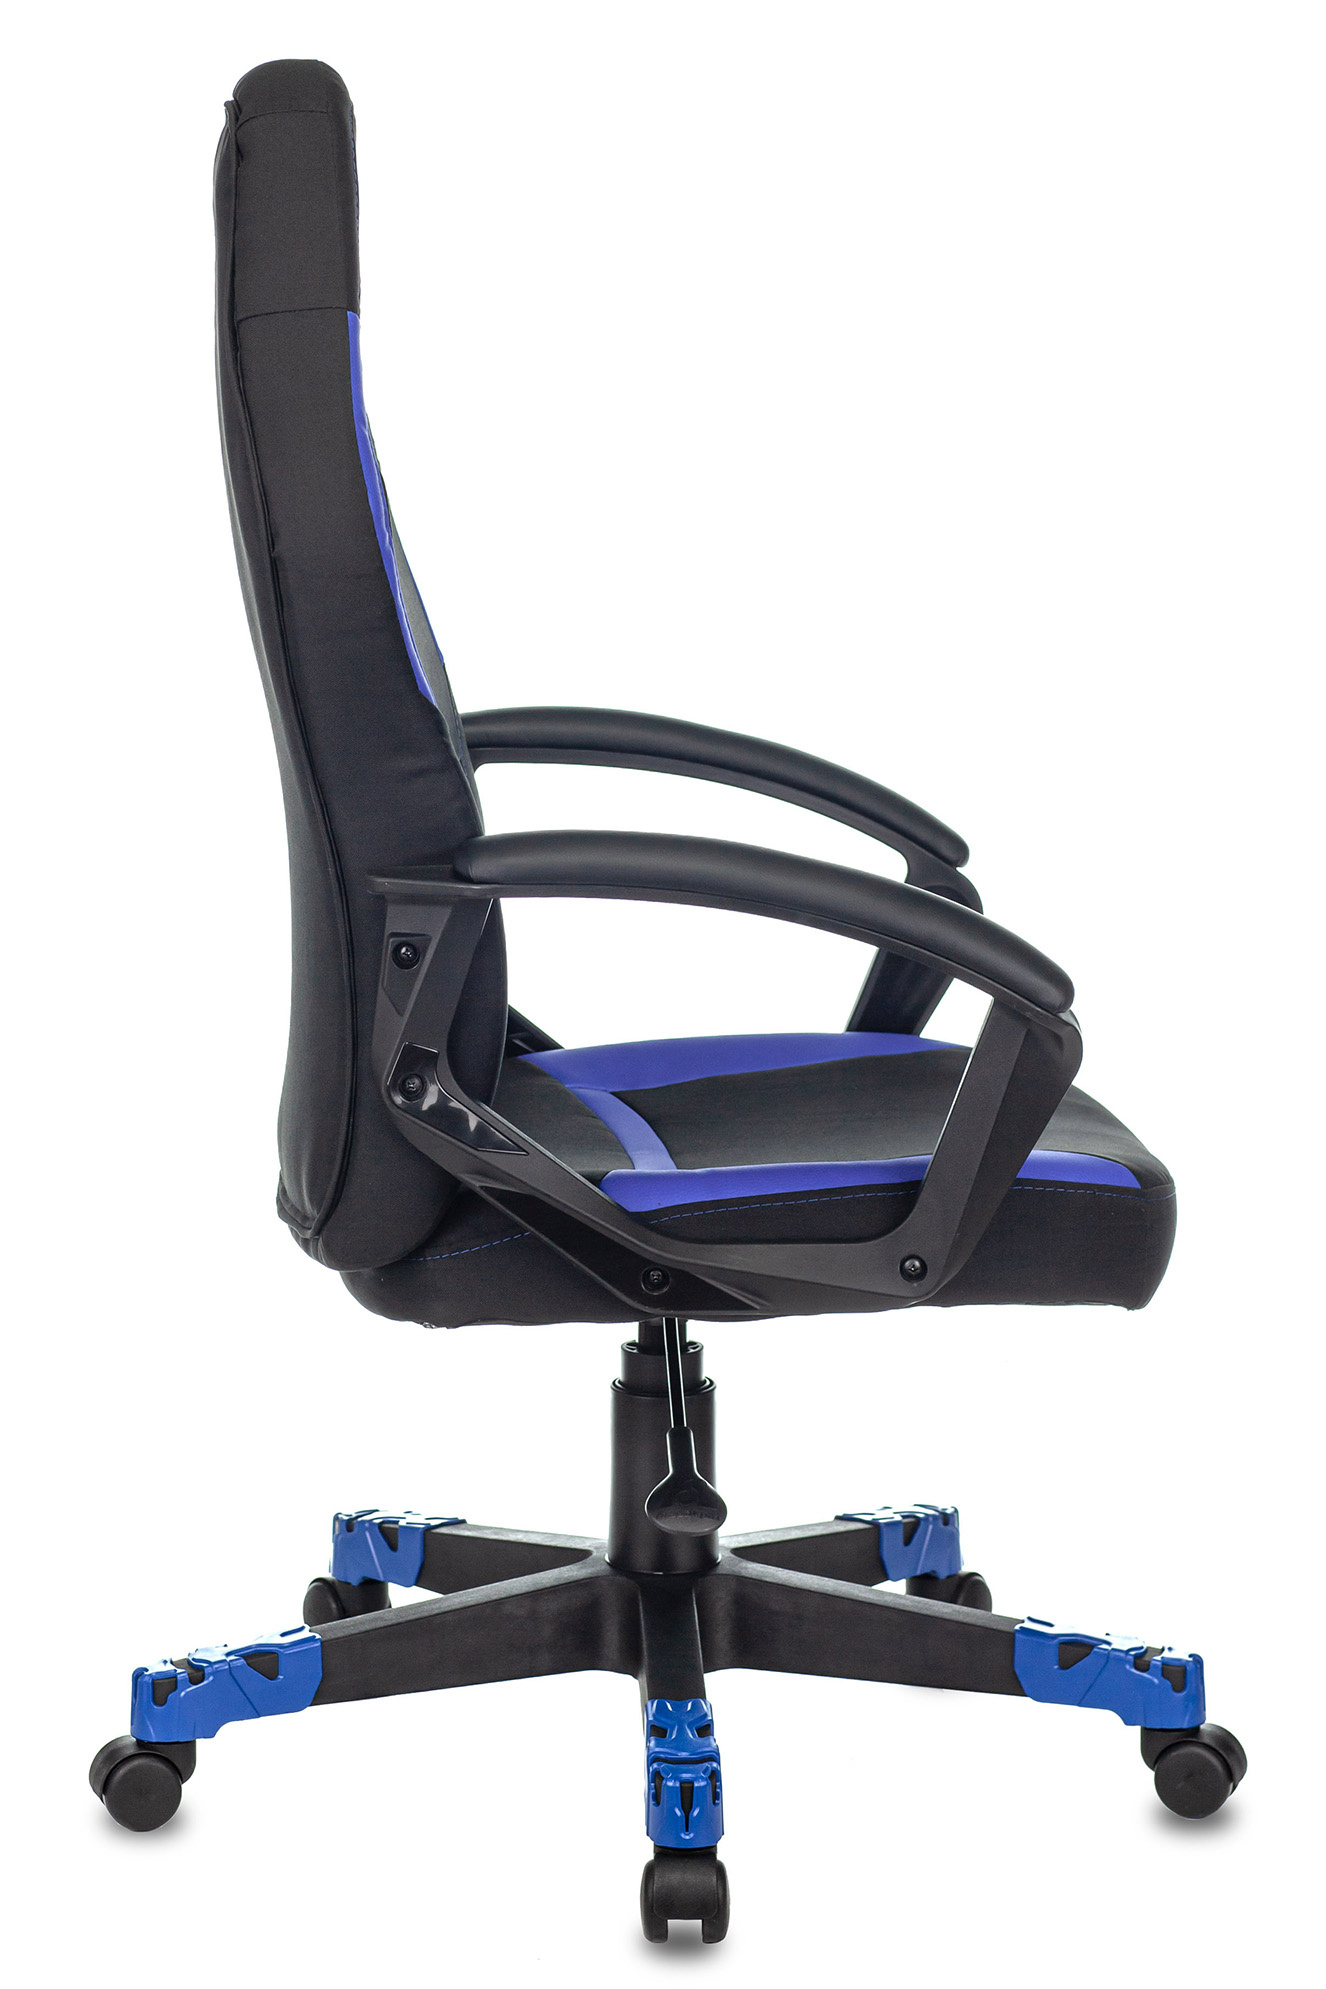 Кресло игровое Zombie 10 черный/синий текстиль/эко.кожа крестов. пластик